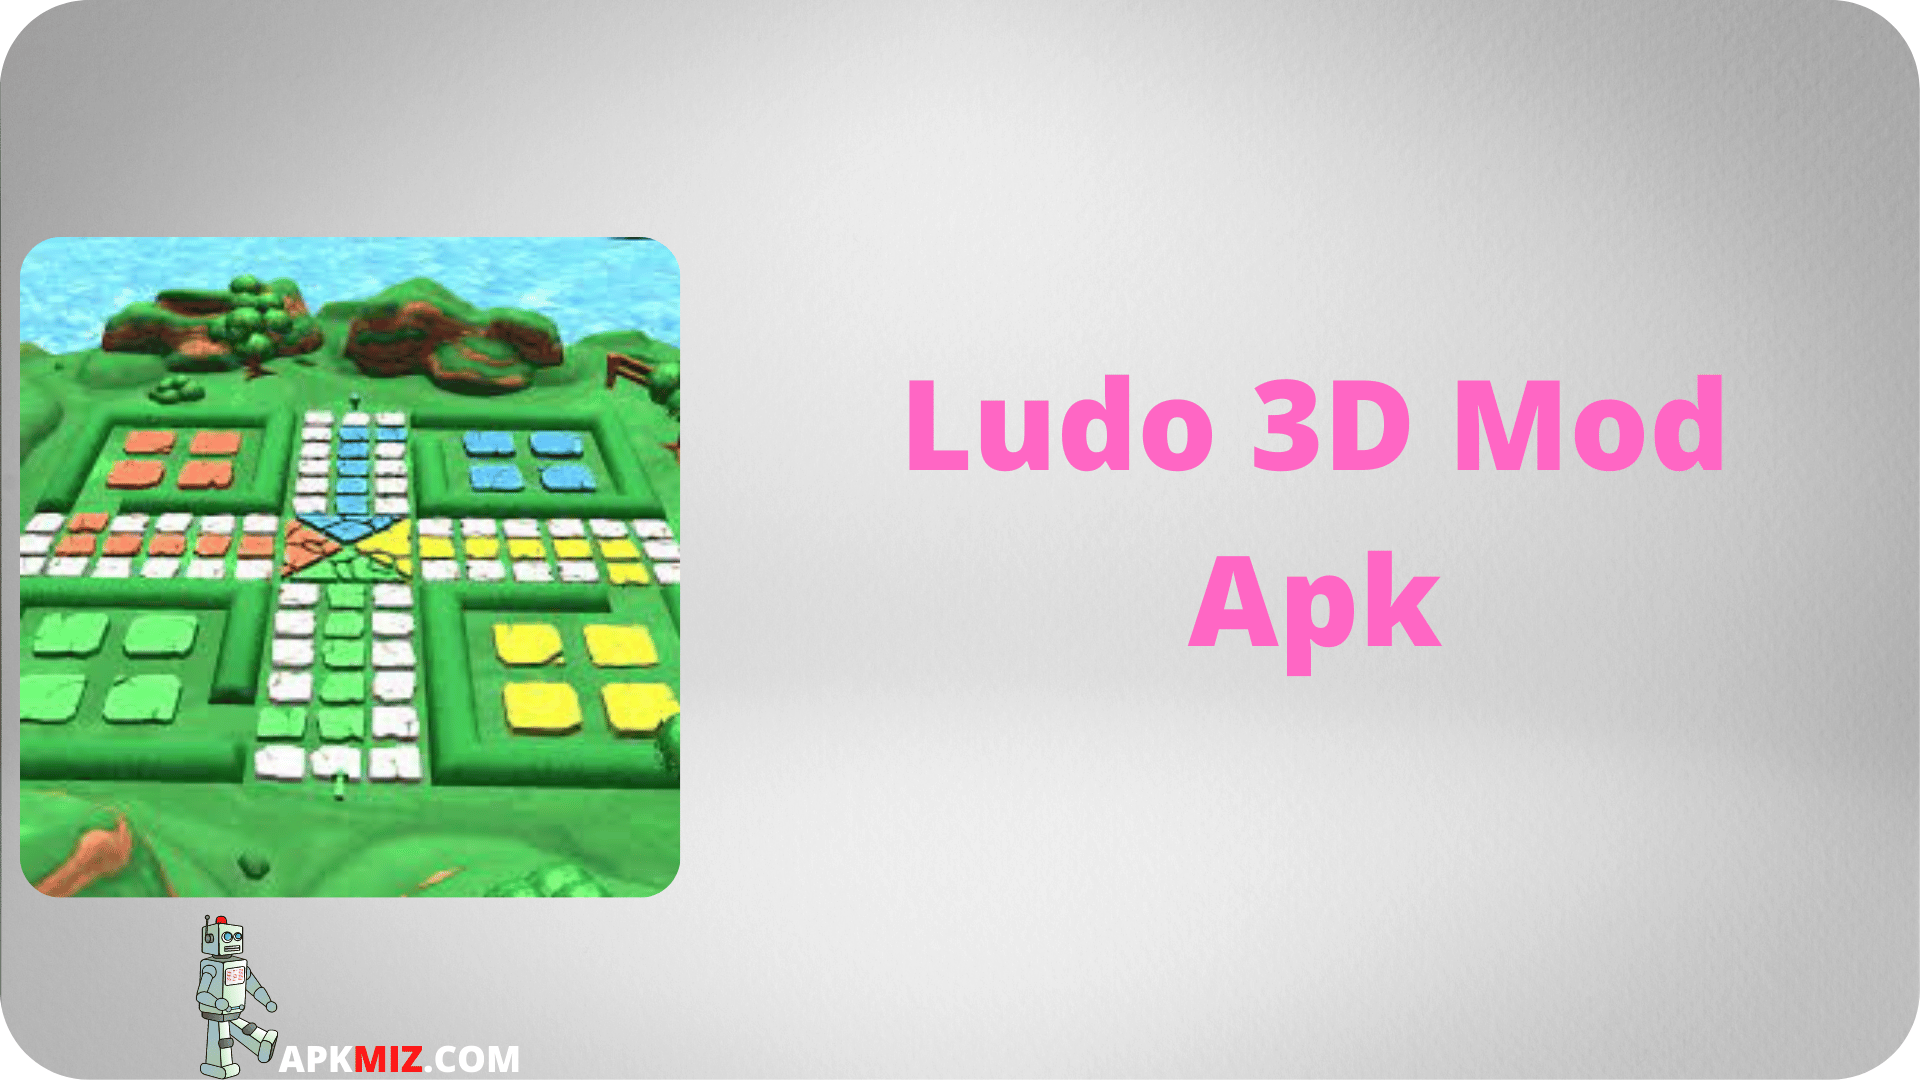 Ludo 3D Mod Apk